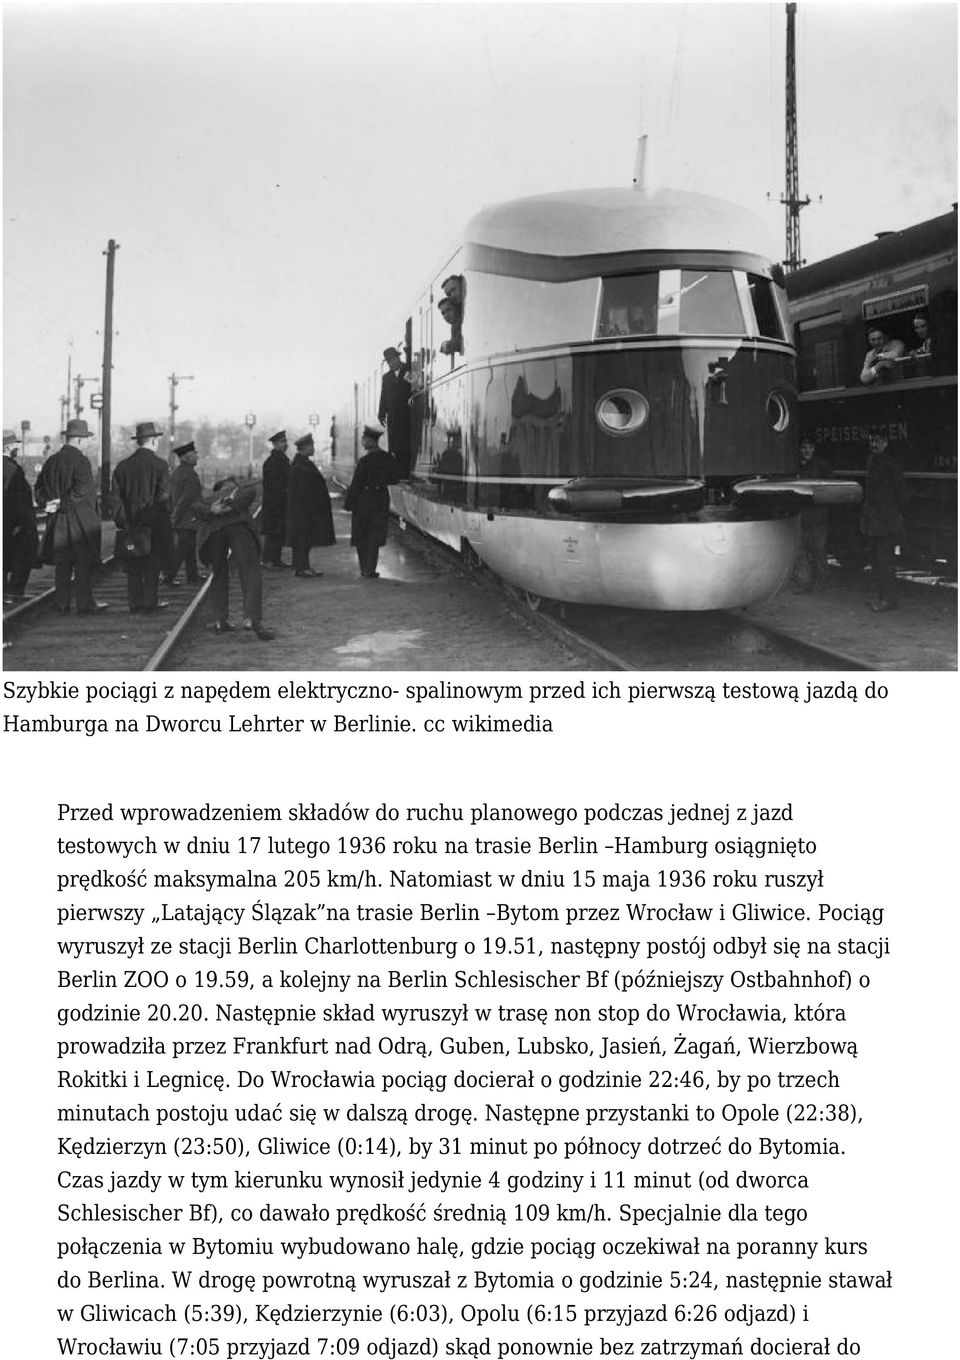 Natomiast w dniu 15 maja 1936 roku ruszył pierwszy Latający Ślązak na trasie Berlin Bytom przez Wrocław i Gliwice. Pociąg wyruszył ze stacji Berlin Charlottenburg o 19.